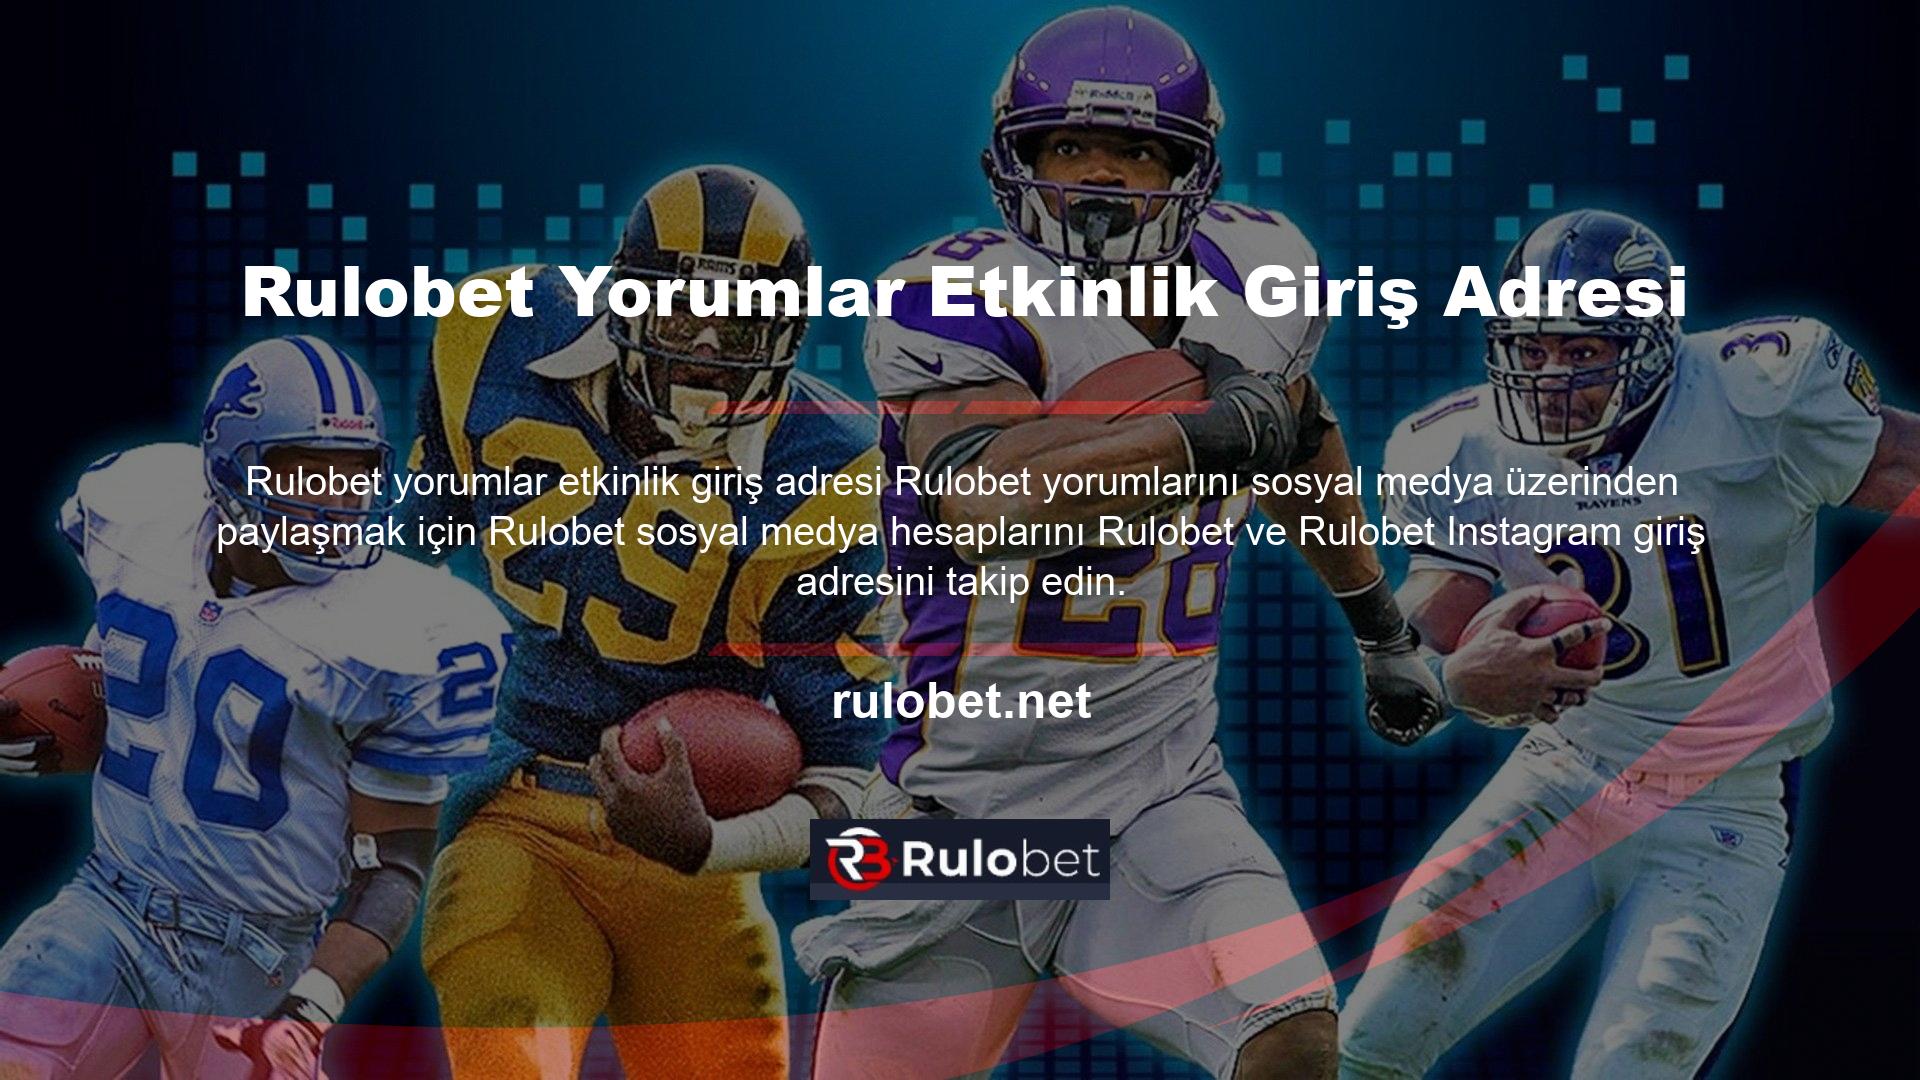 Rulobet yorumlarına giriş adresi istemek için Rulobet destek e-posta adresi Rulobet